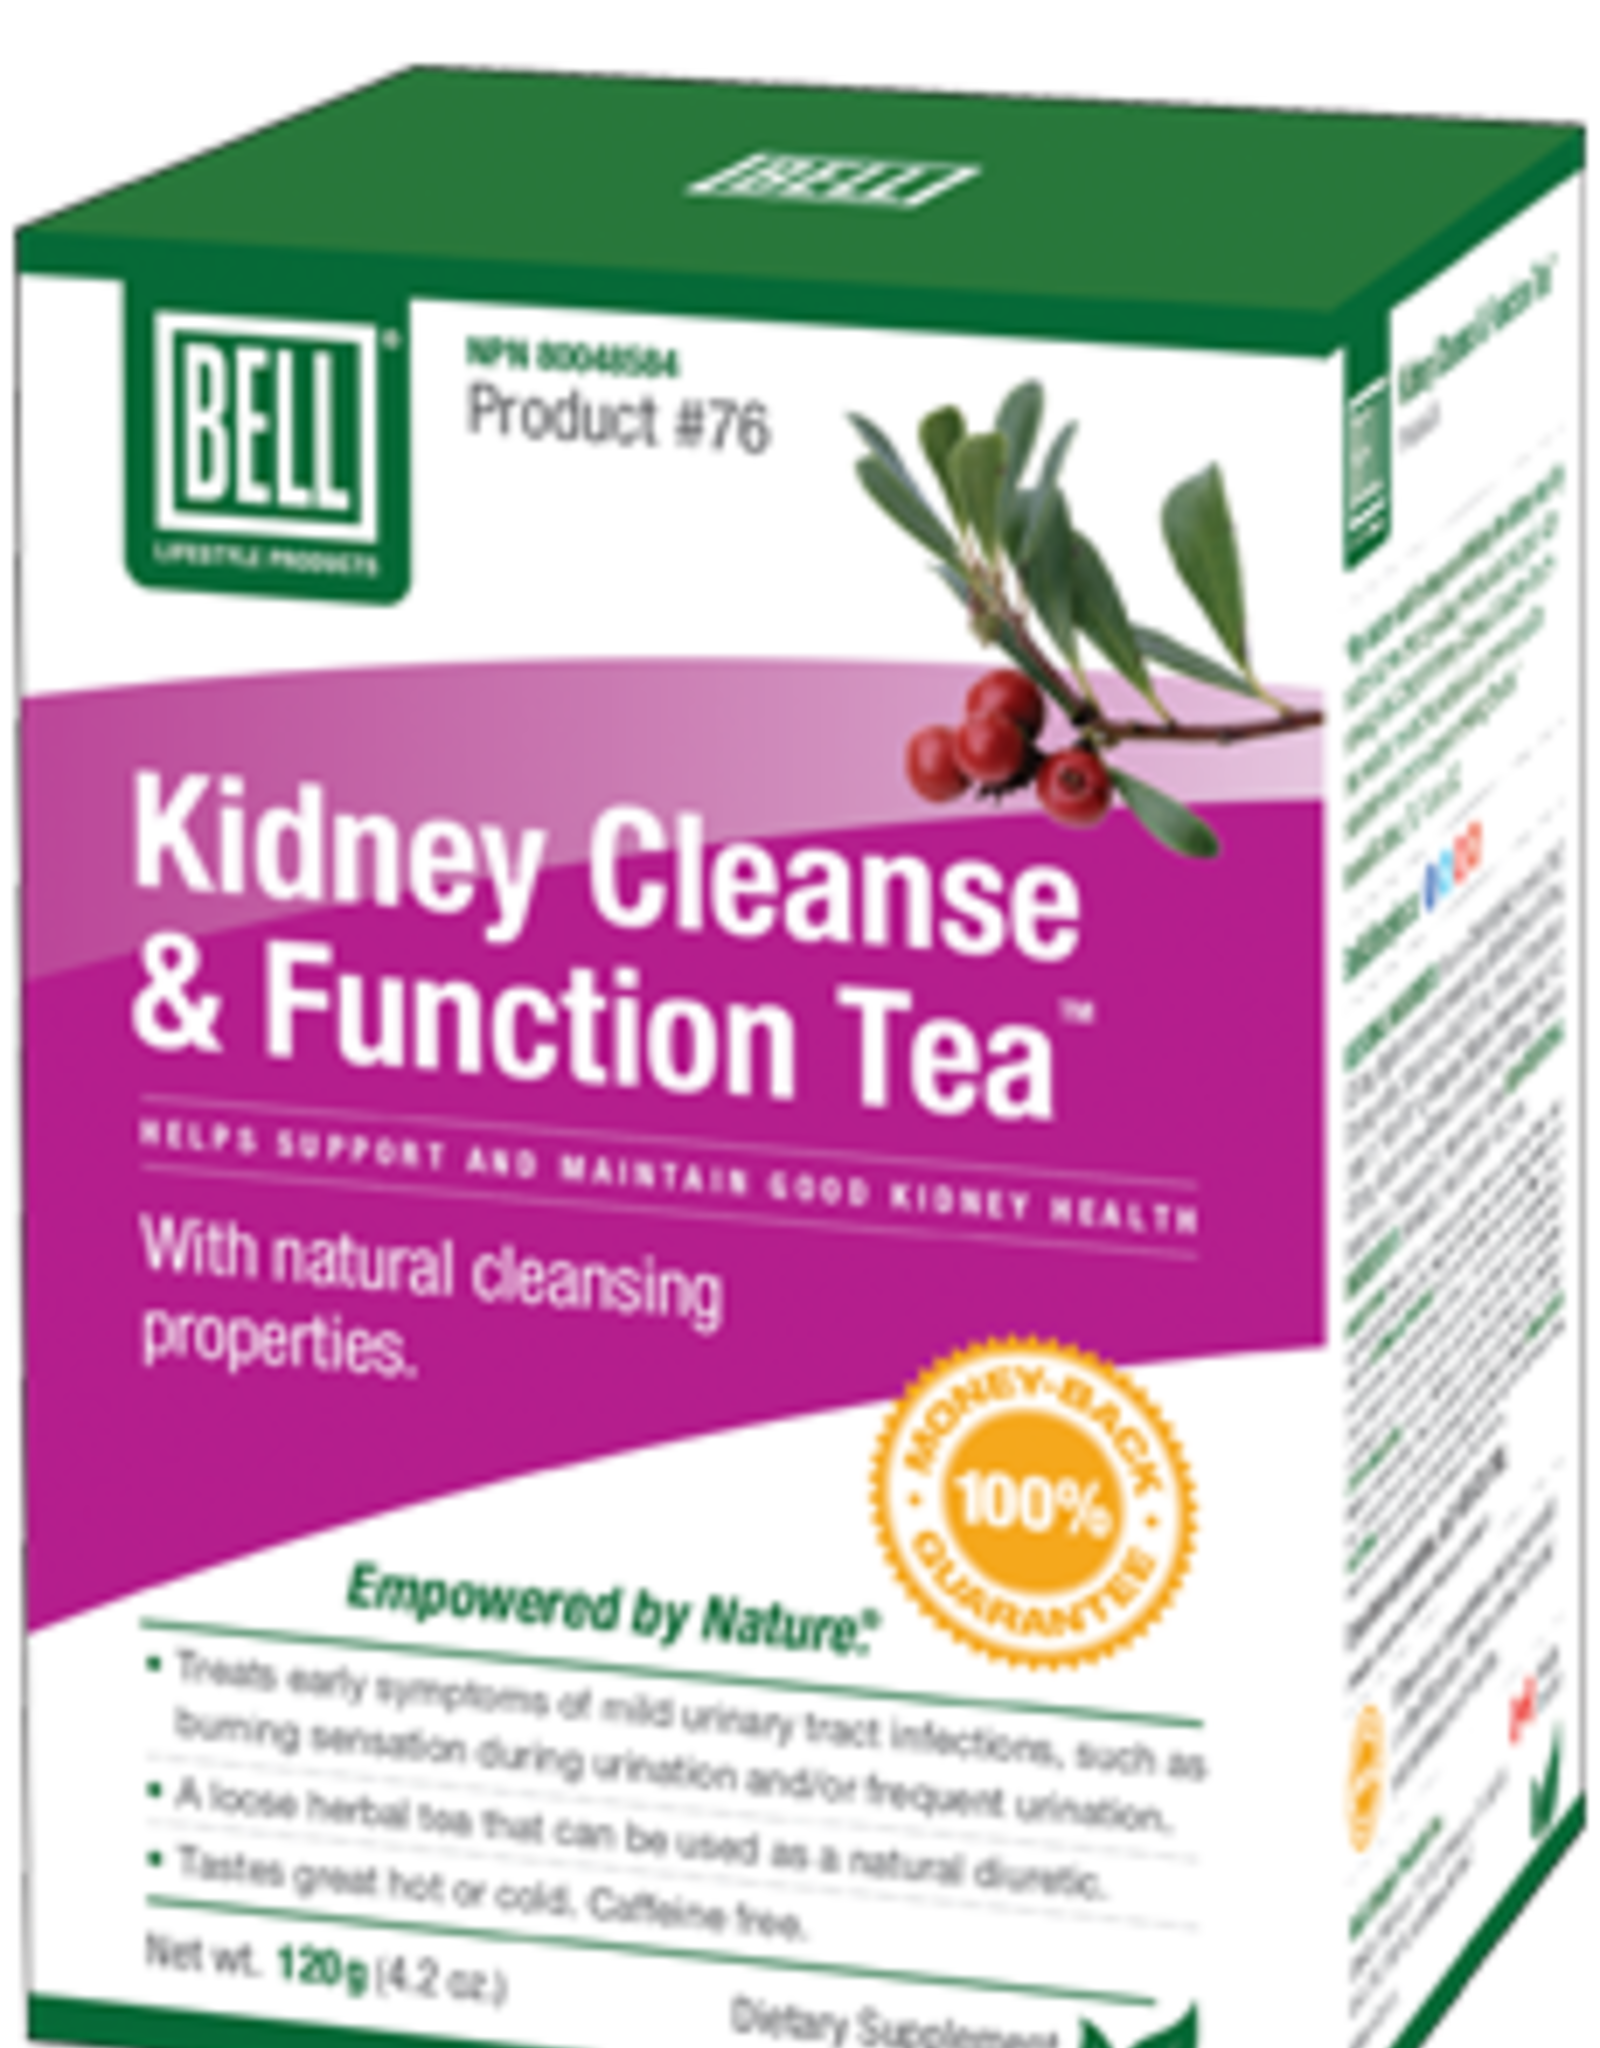 KIDNEY CLEANSE/FUNCTION TEA